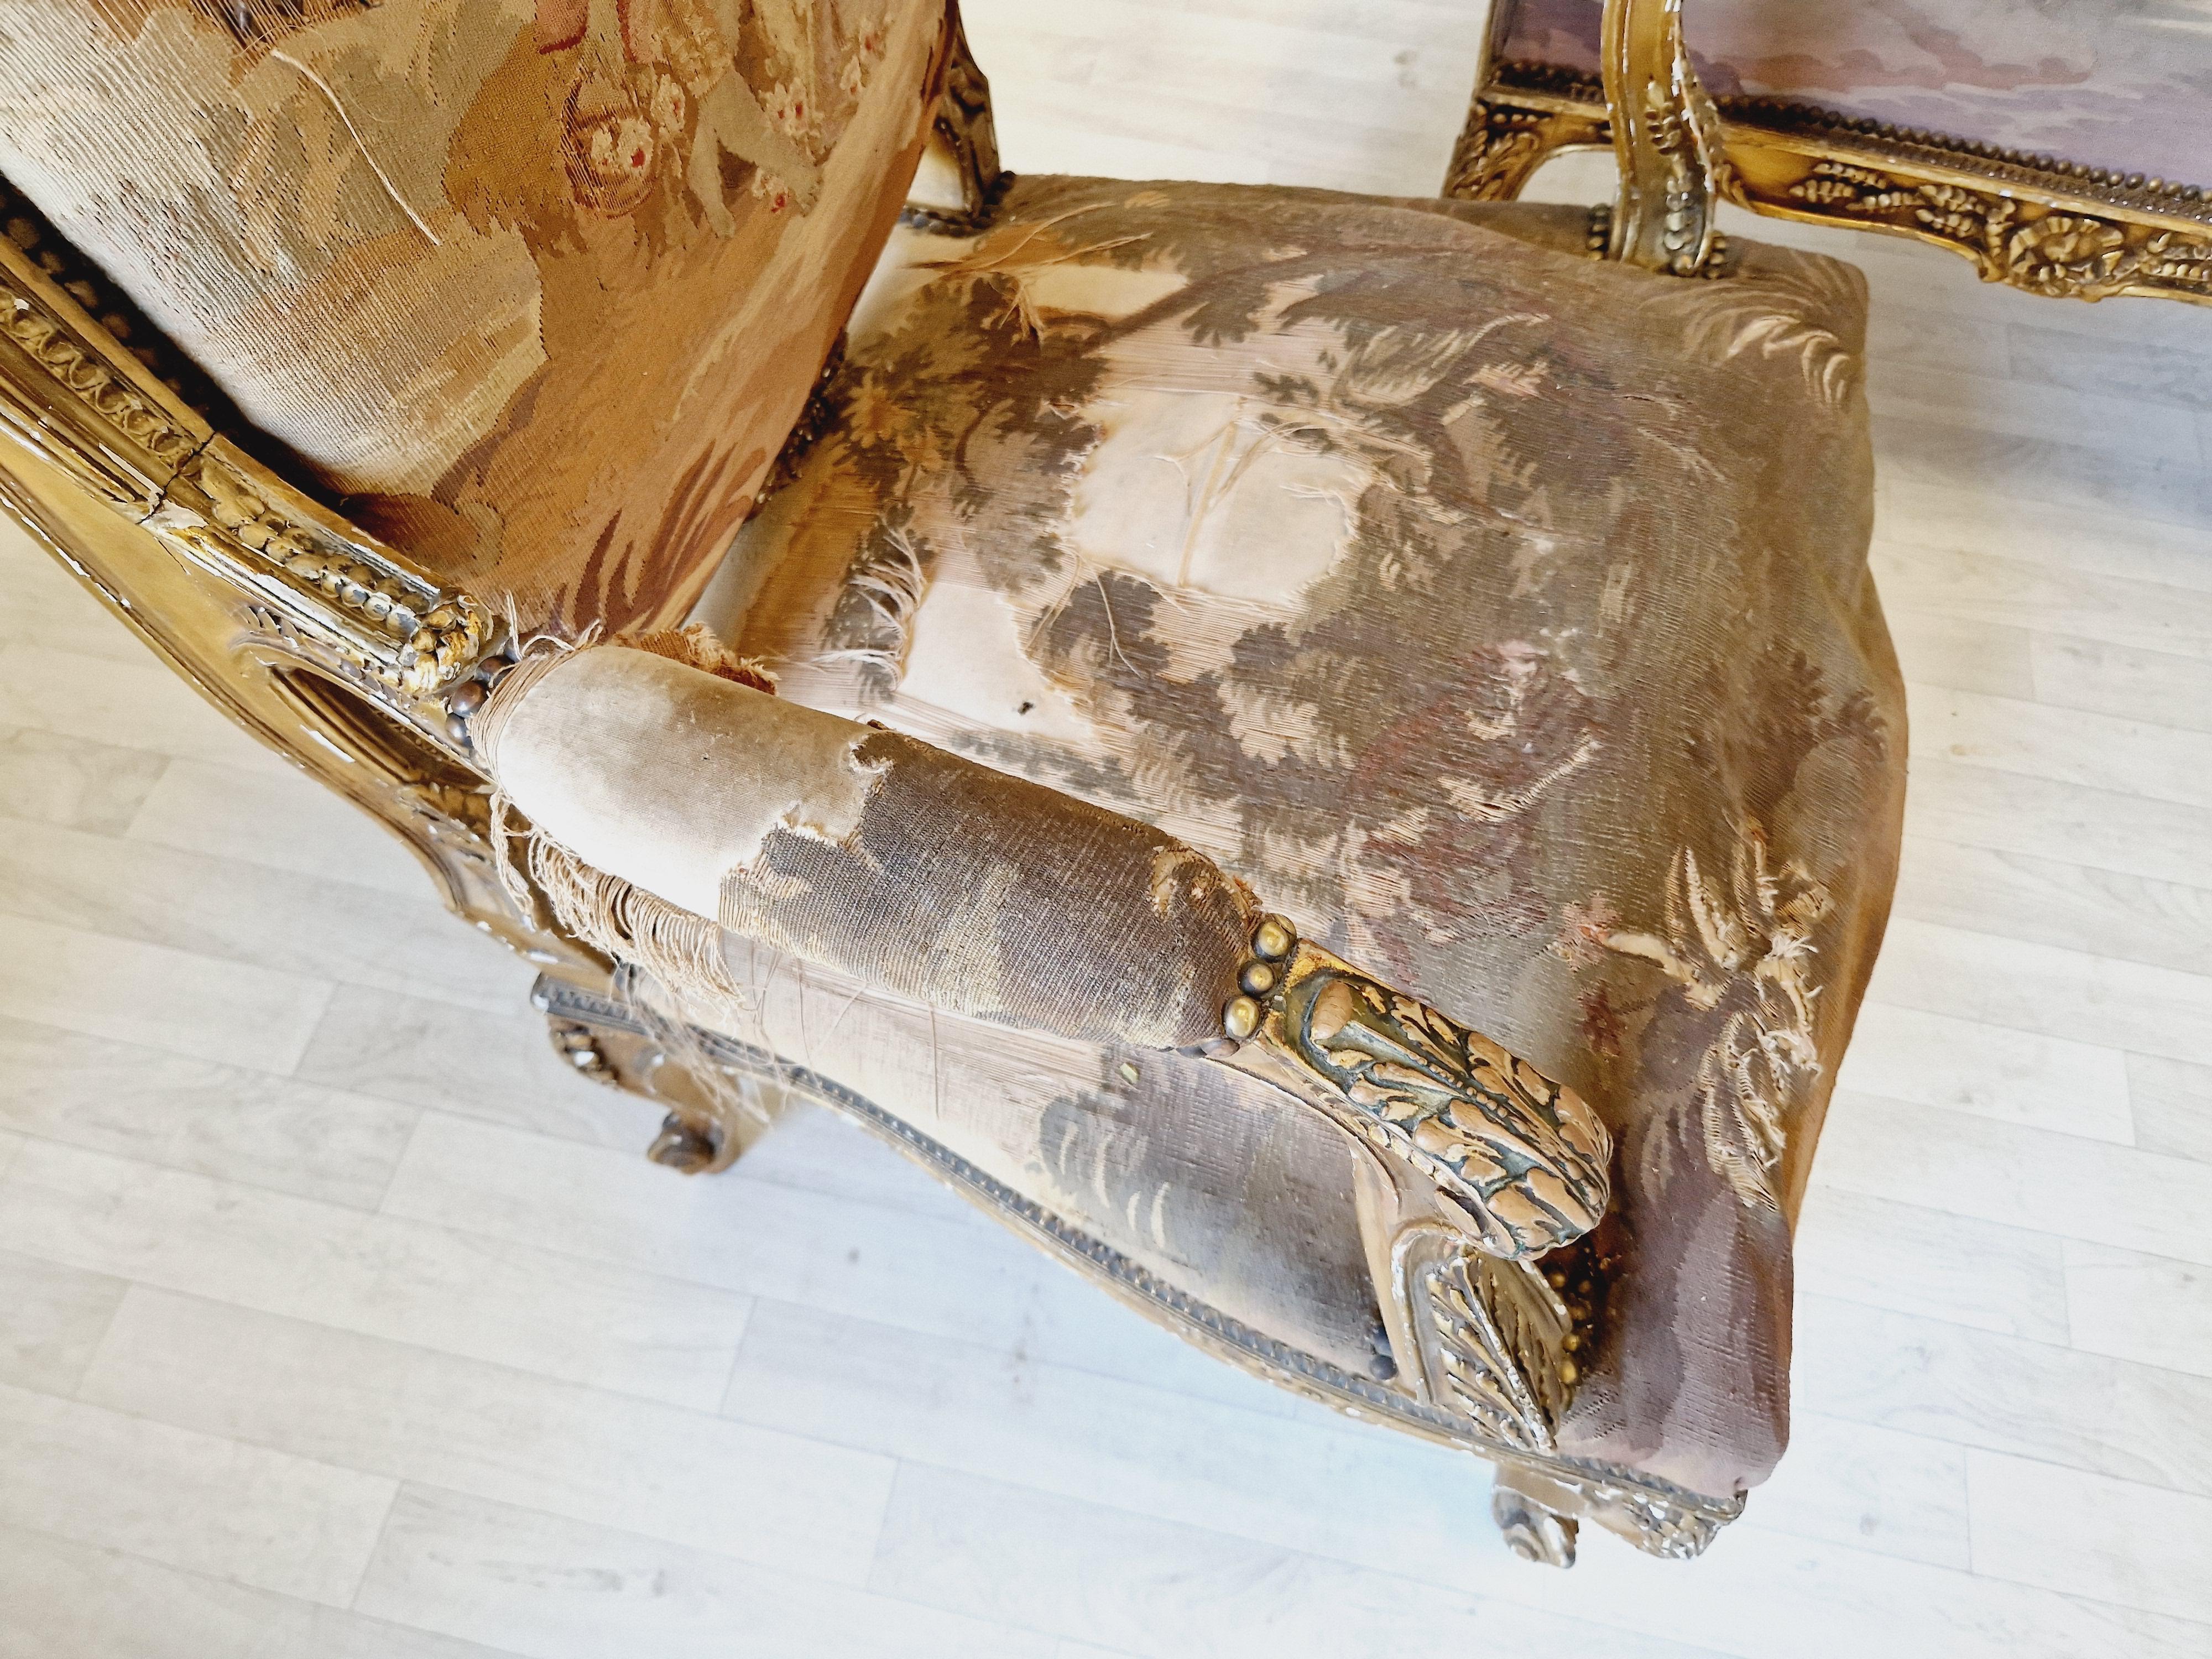 
Nous sommes ravis d'offrir à la vente cet exquis ensemble de salon d'Aubusson français. Il s'agit d'un magnifique meuble ancien qui ajoutera de l'élégance et du charme à n'importe quelle pièce. L'ensemble comprend un canapé Louis XV en bois doré et